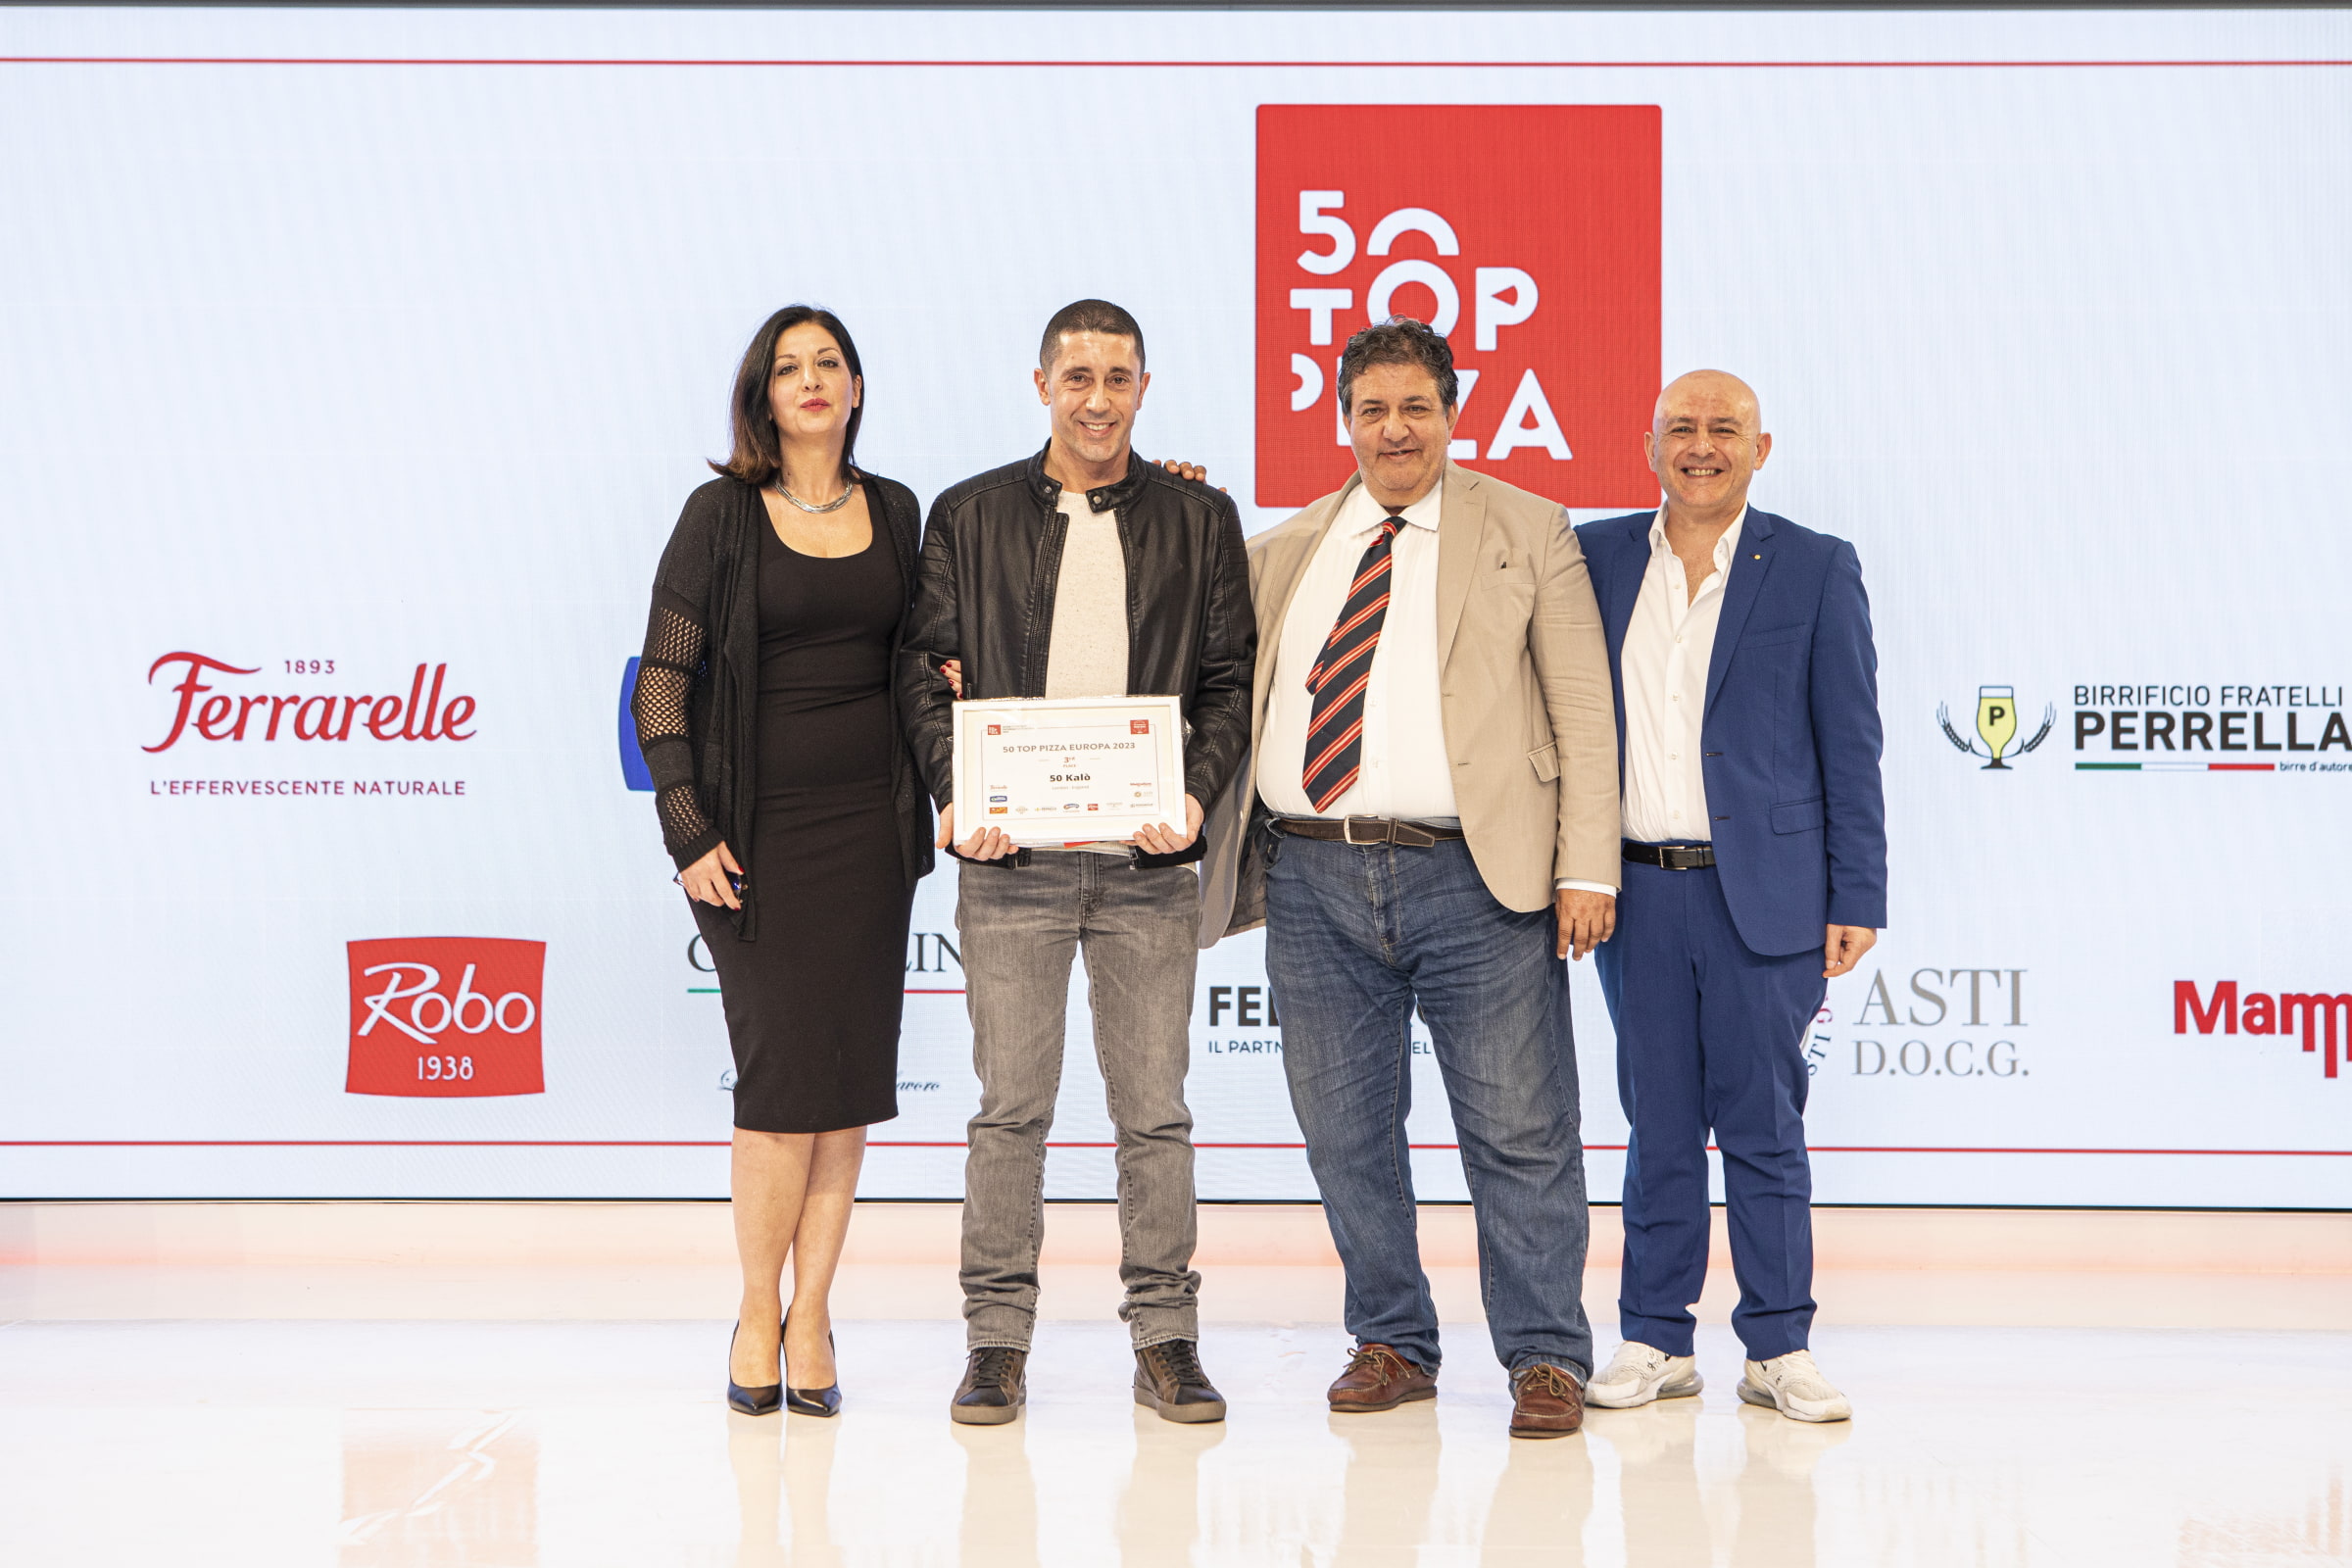 A smiling Ciro Salva accepting the award (photo: 50 Top Pizza)